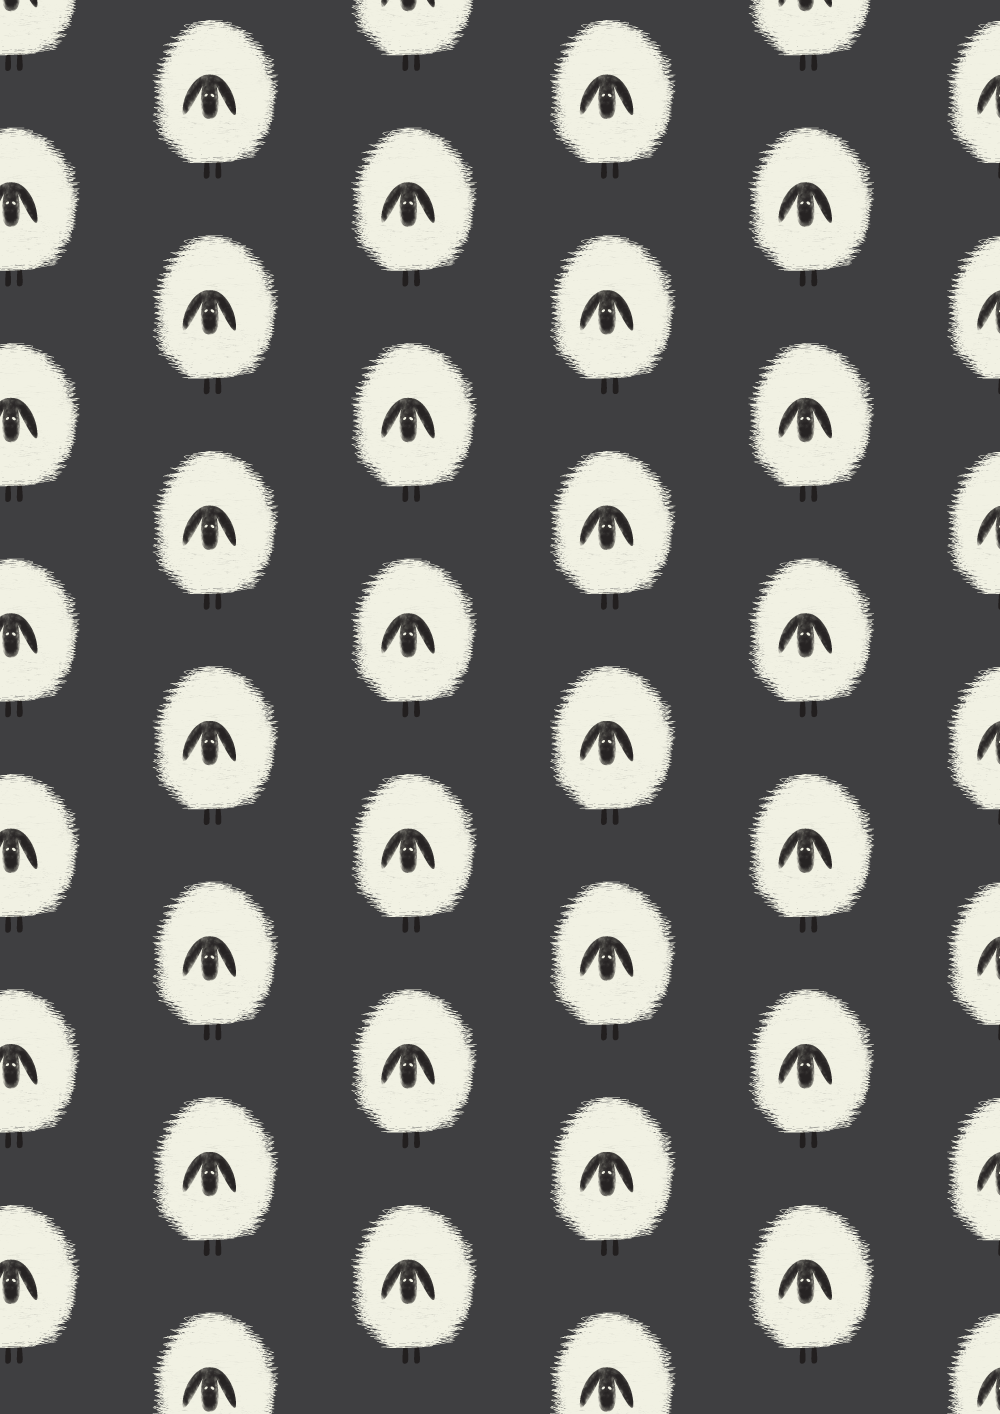 Sheep pattern